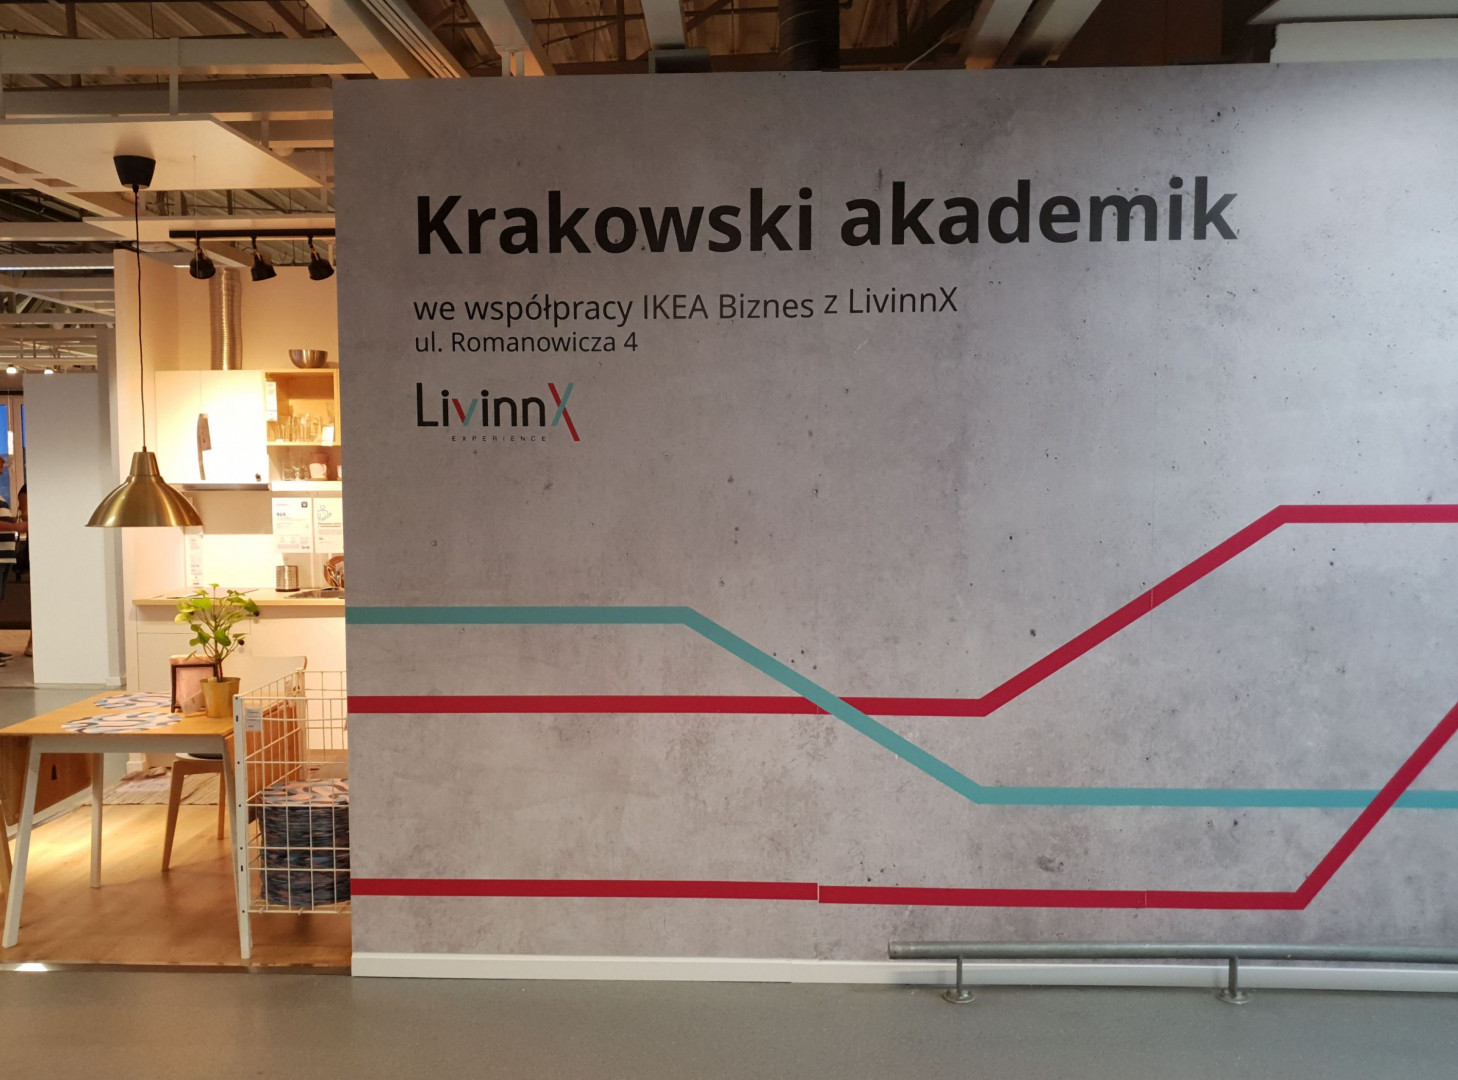 Tak będzie wyglądał akademik LivinnX w Krakowie. Fot. IKEA